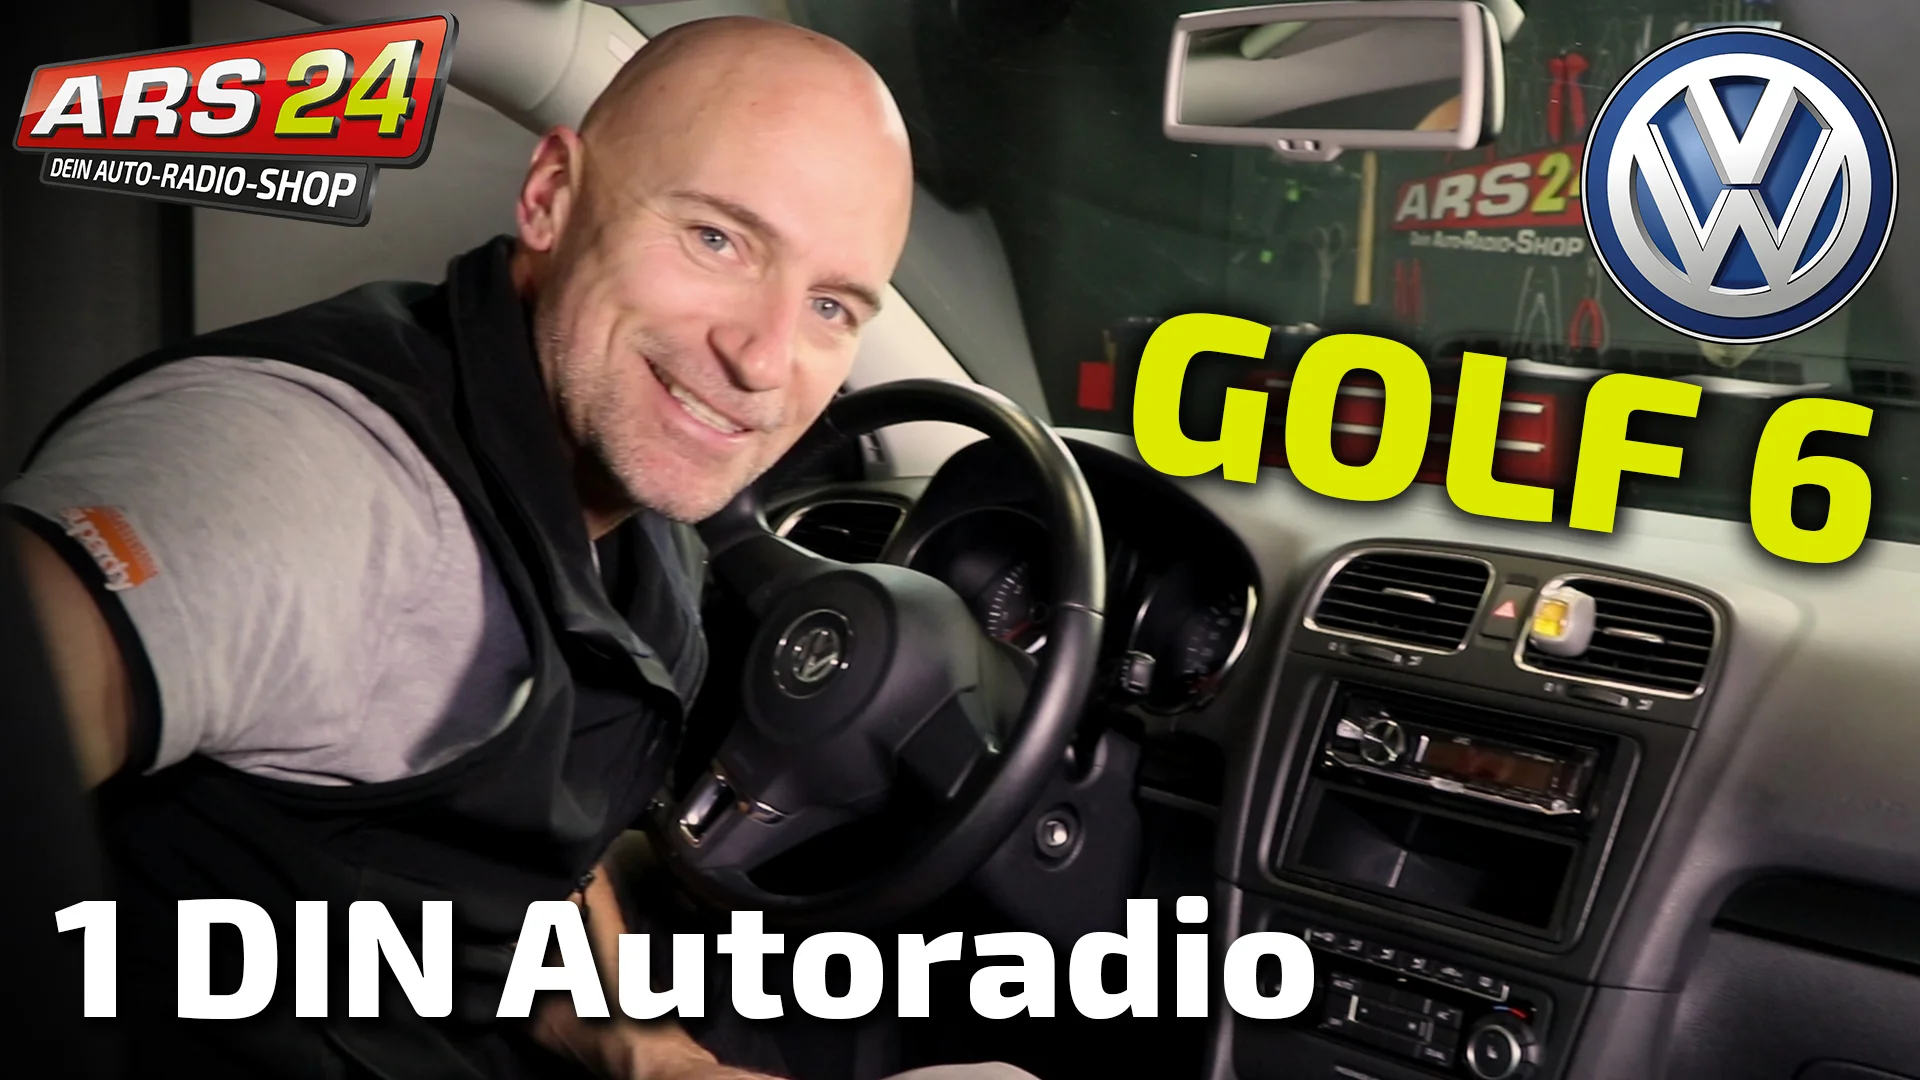 1-DIN Autoradio im VW Golf 6 einbauen, TUTORIAL